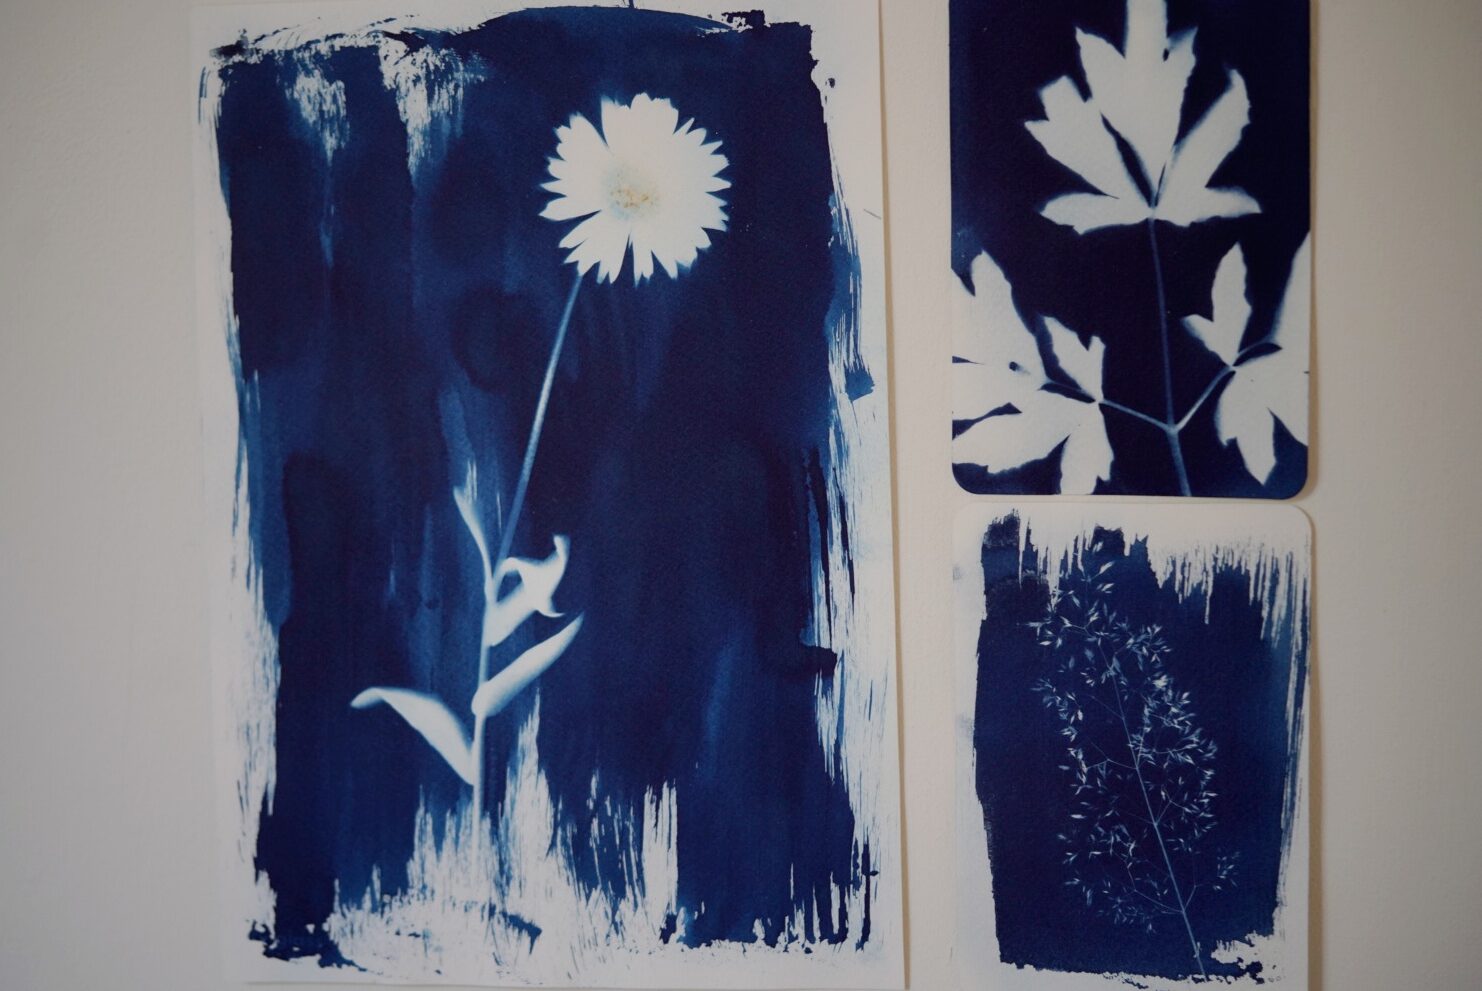 zonneprints maken met cyanotype